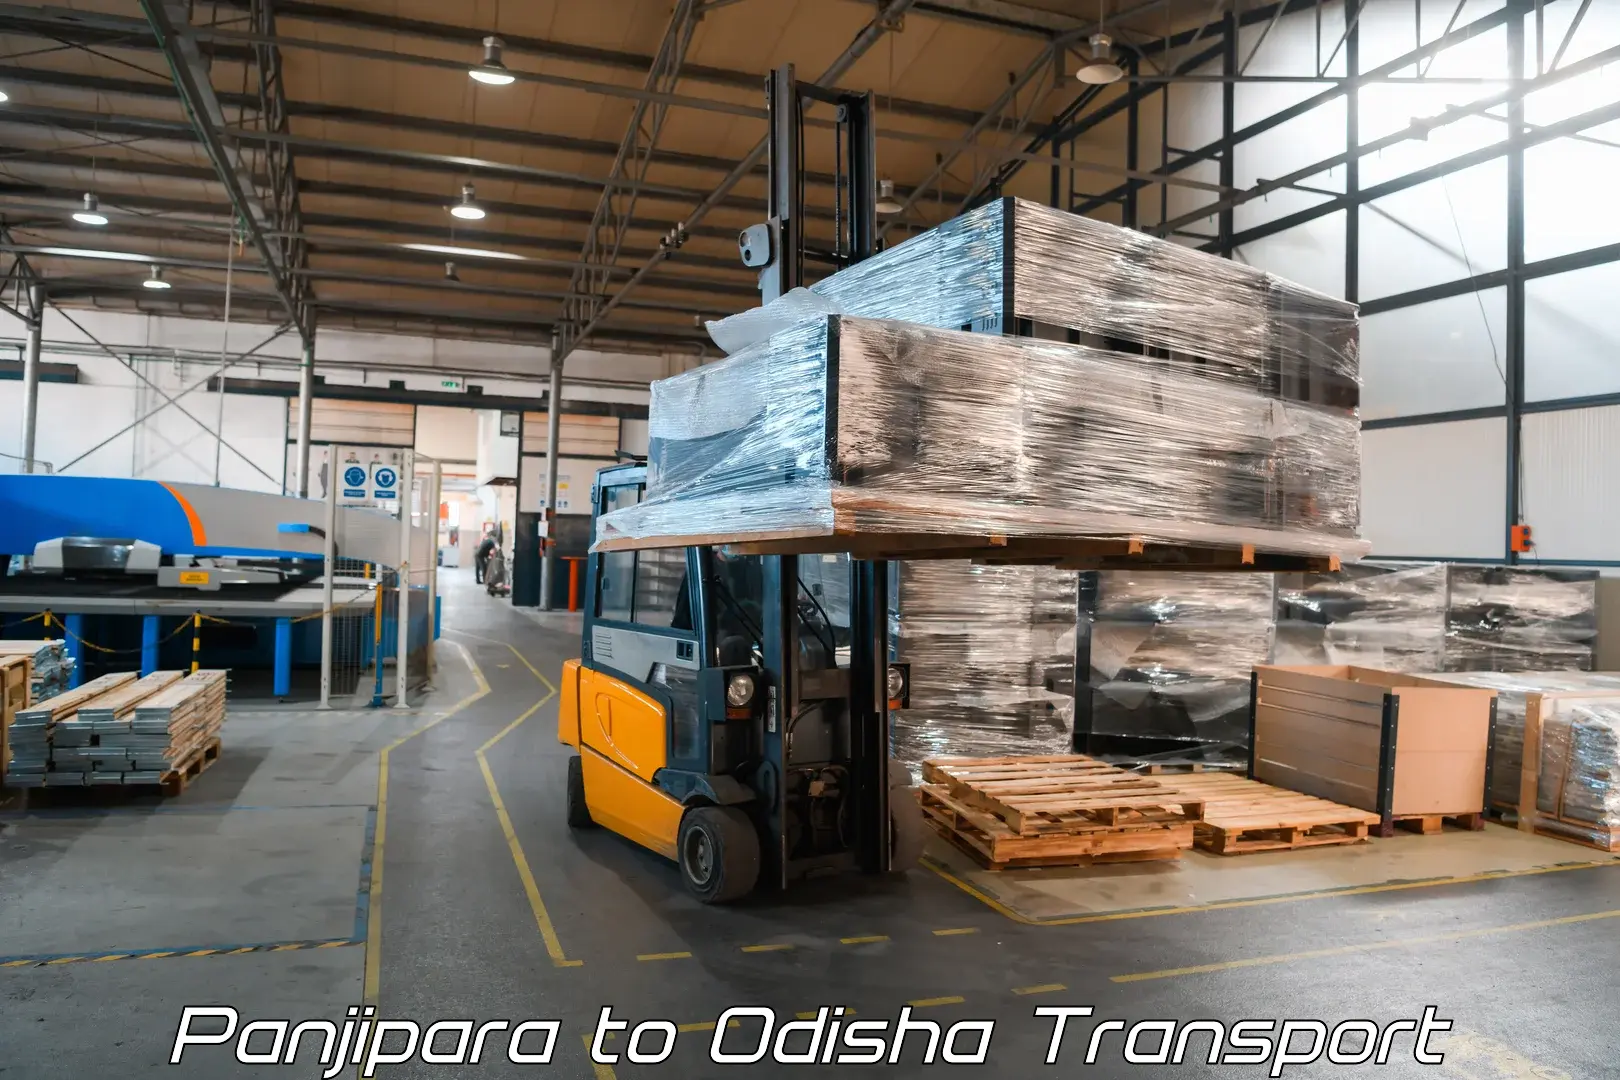 Air freight transport services Panjipara to Odisha